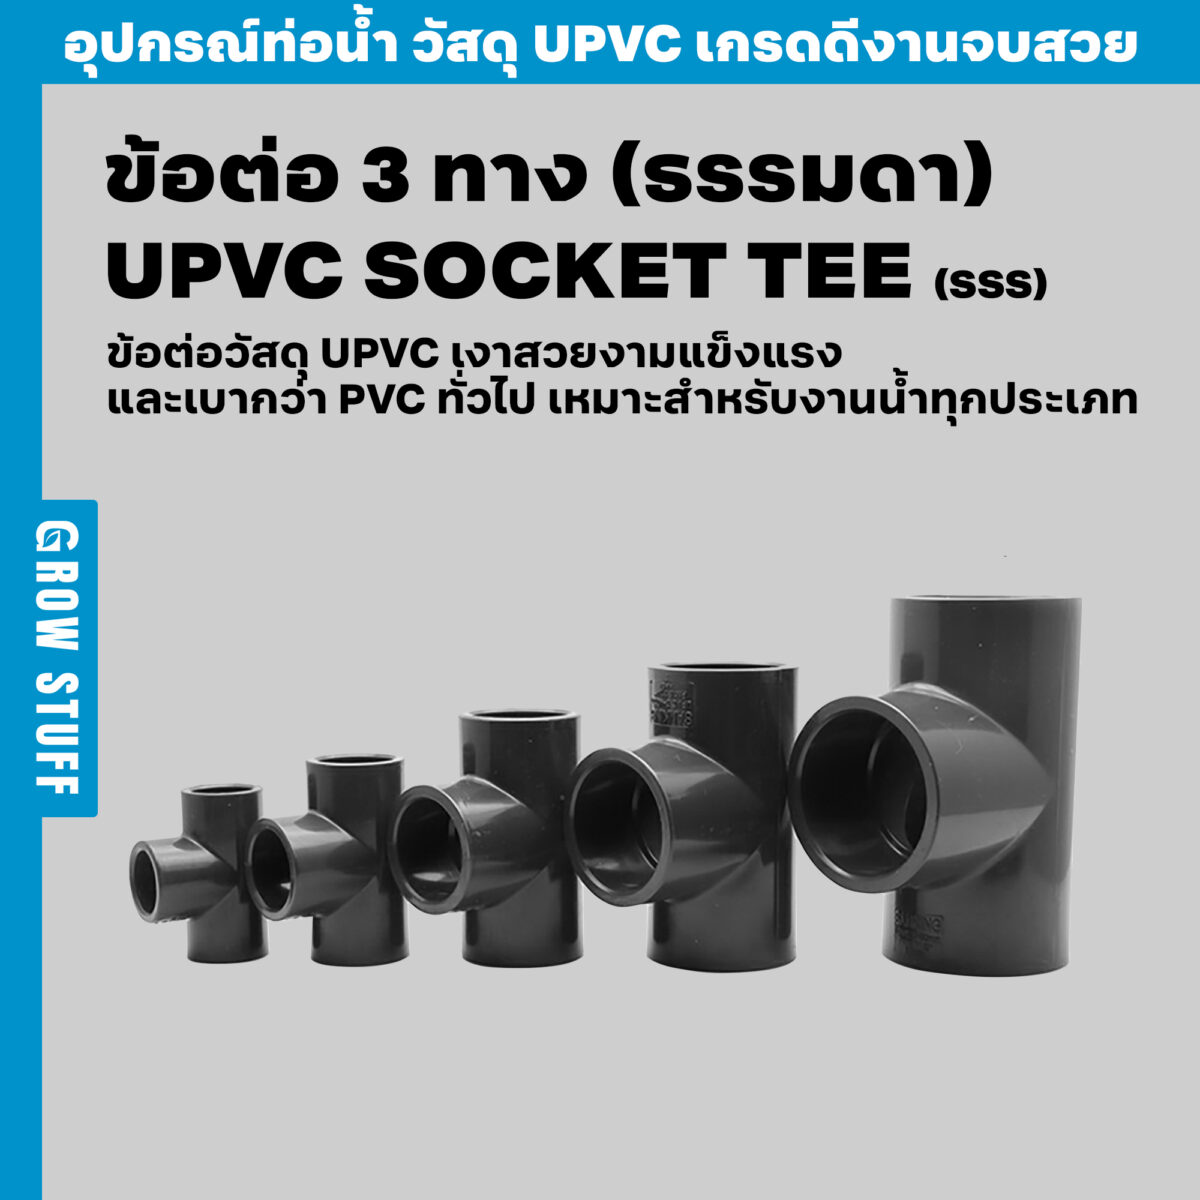 Update ข้อต่อ 3 ทาง ธรรมดา UPVC Socket TEE SSS